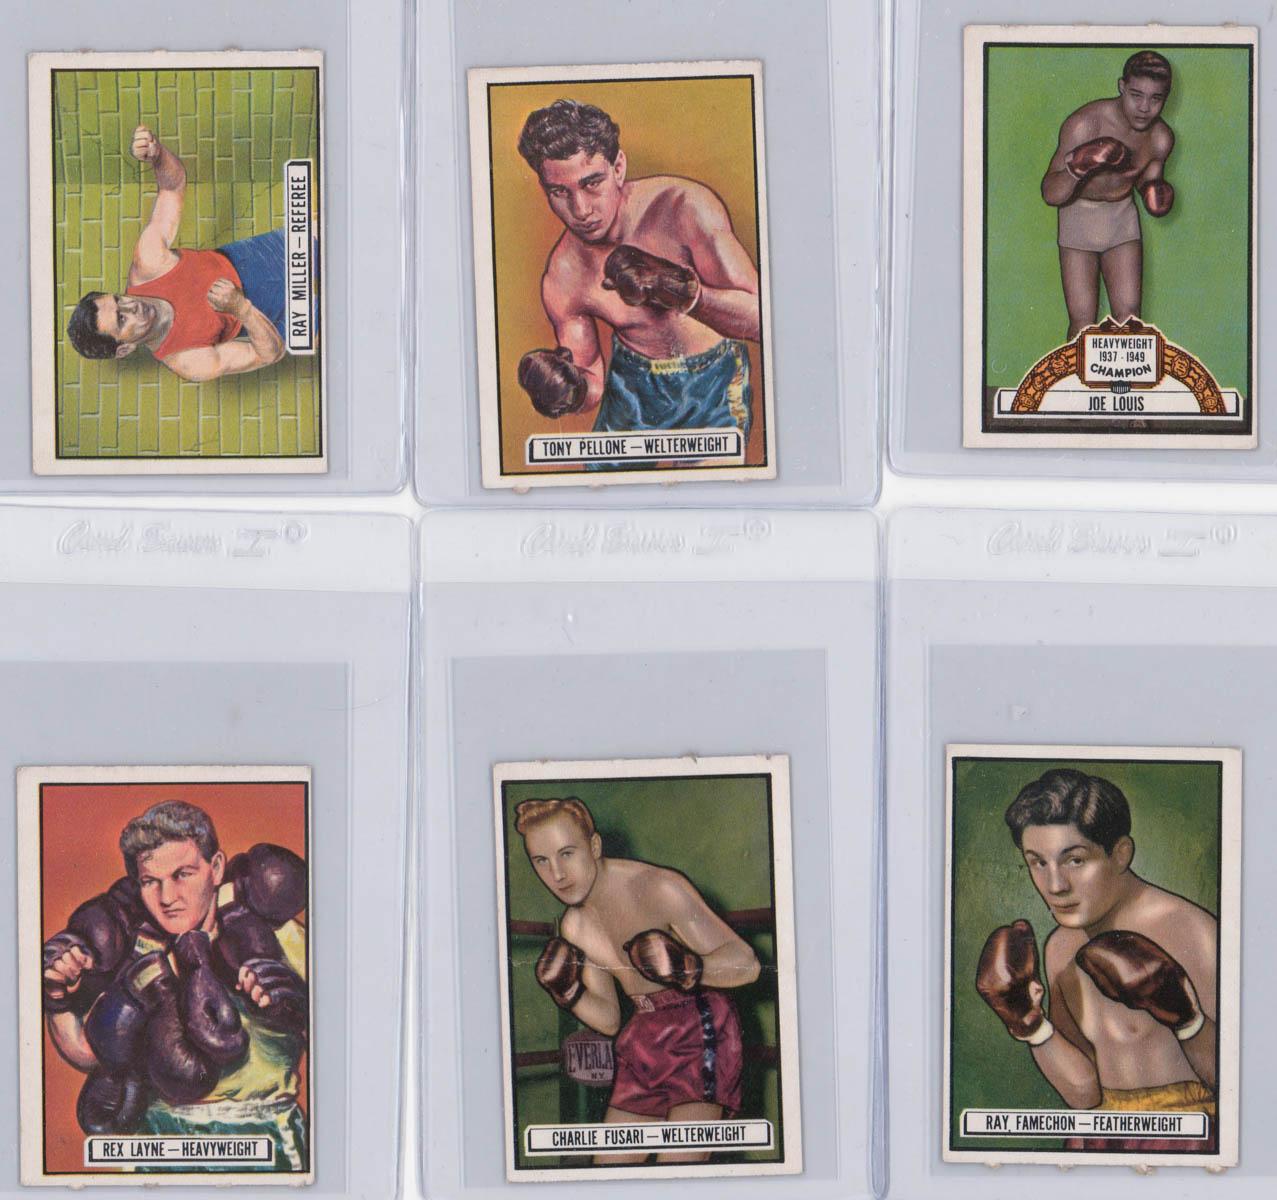 Boxing Cards - 1951 Topps Ringside